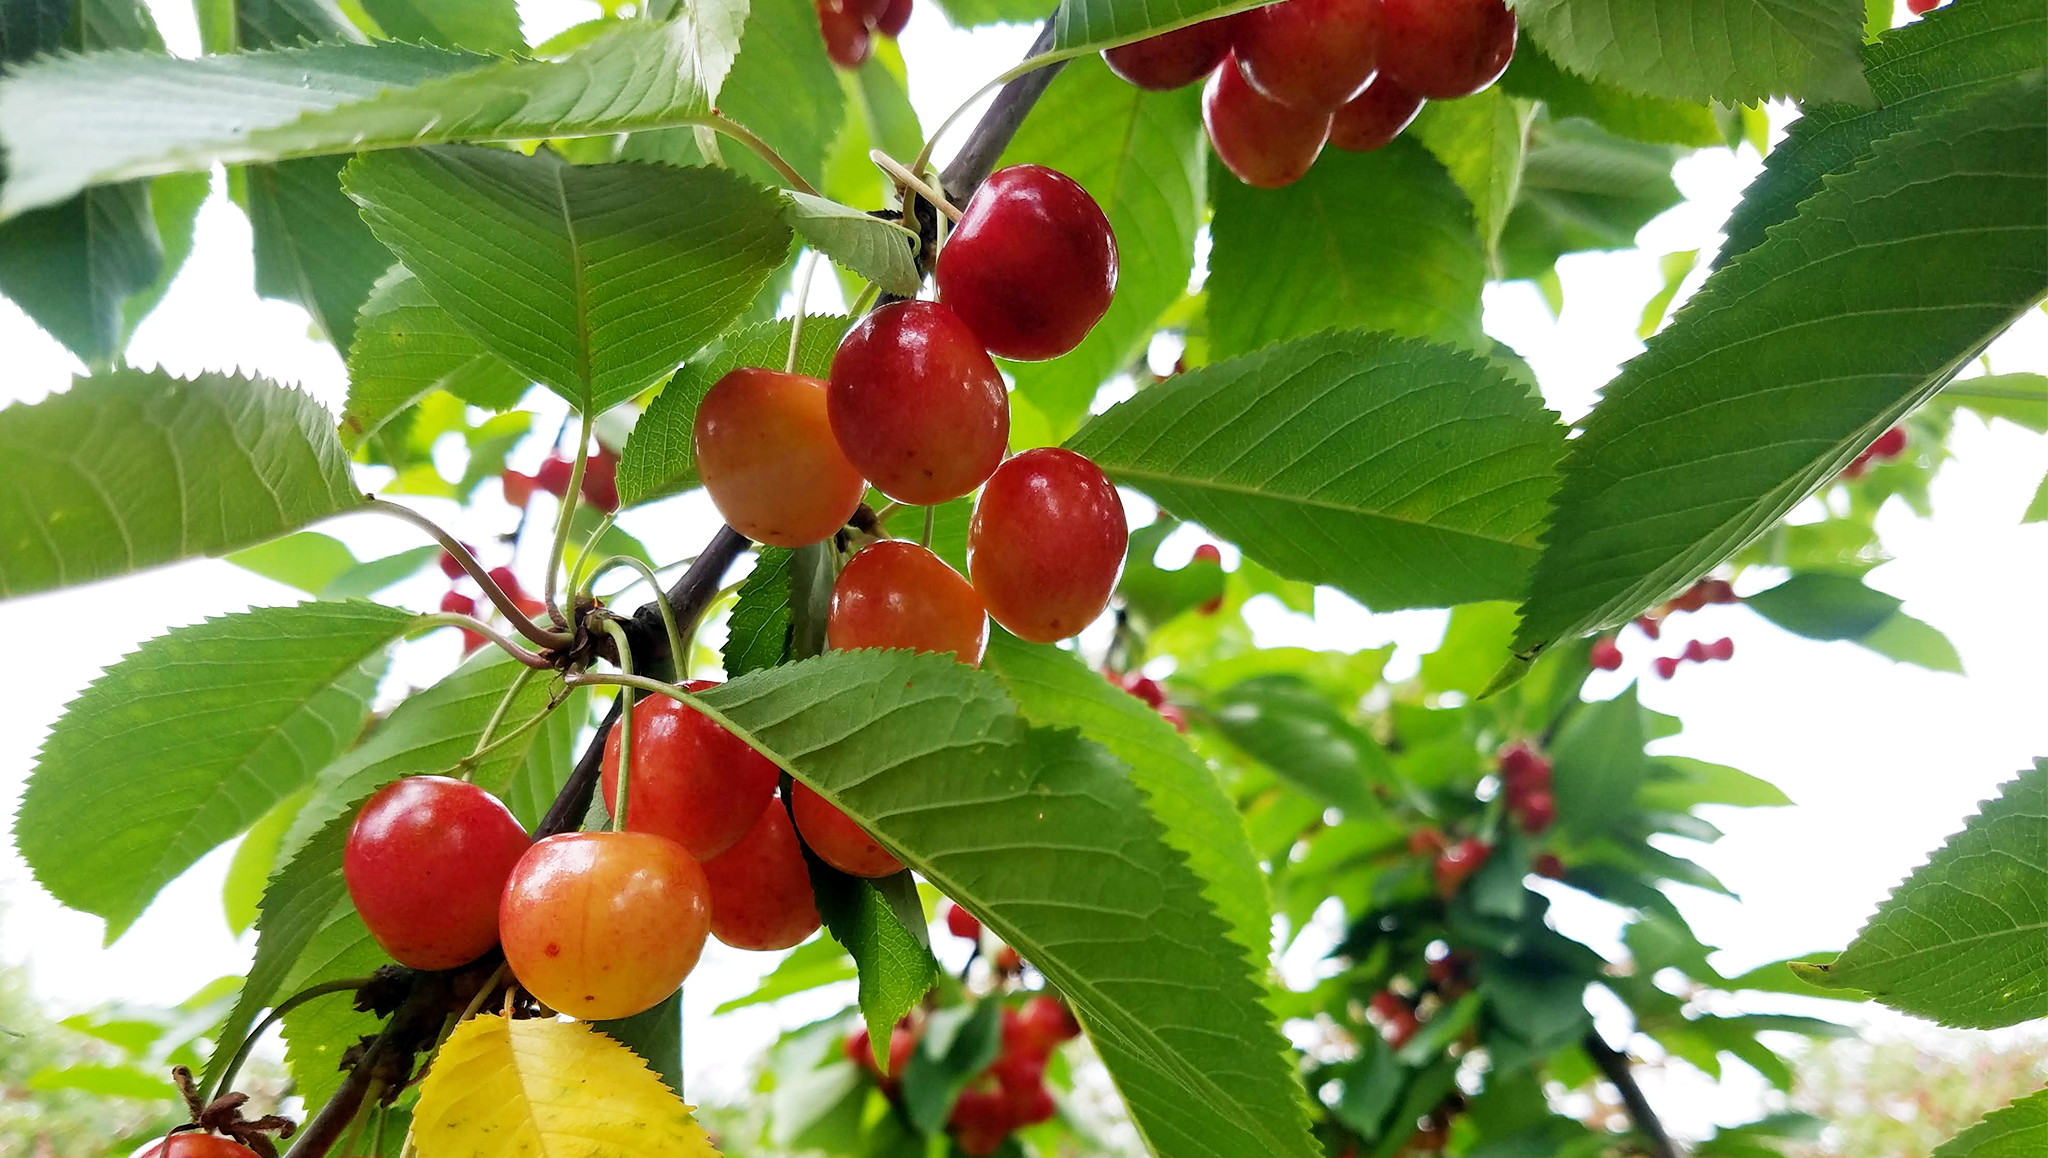 Haucks Orchard Rainier Cherries